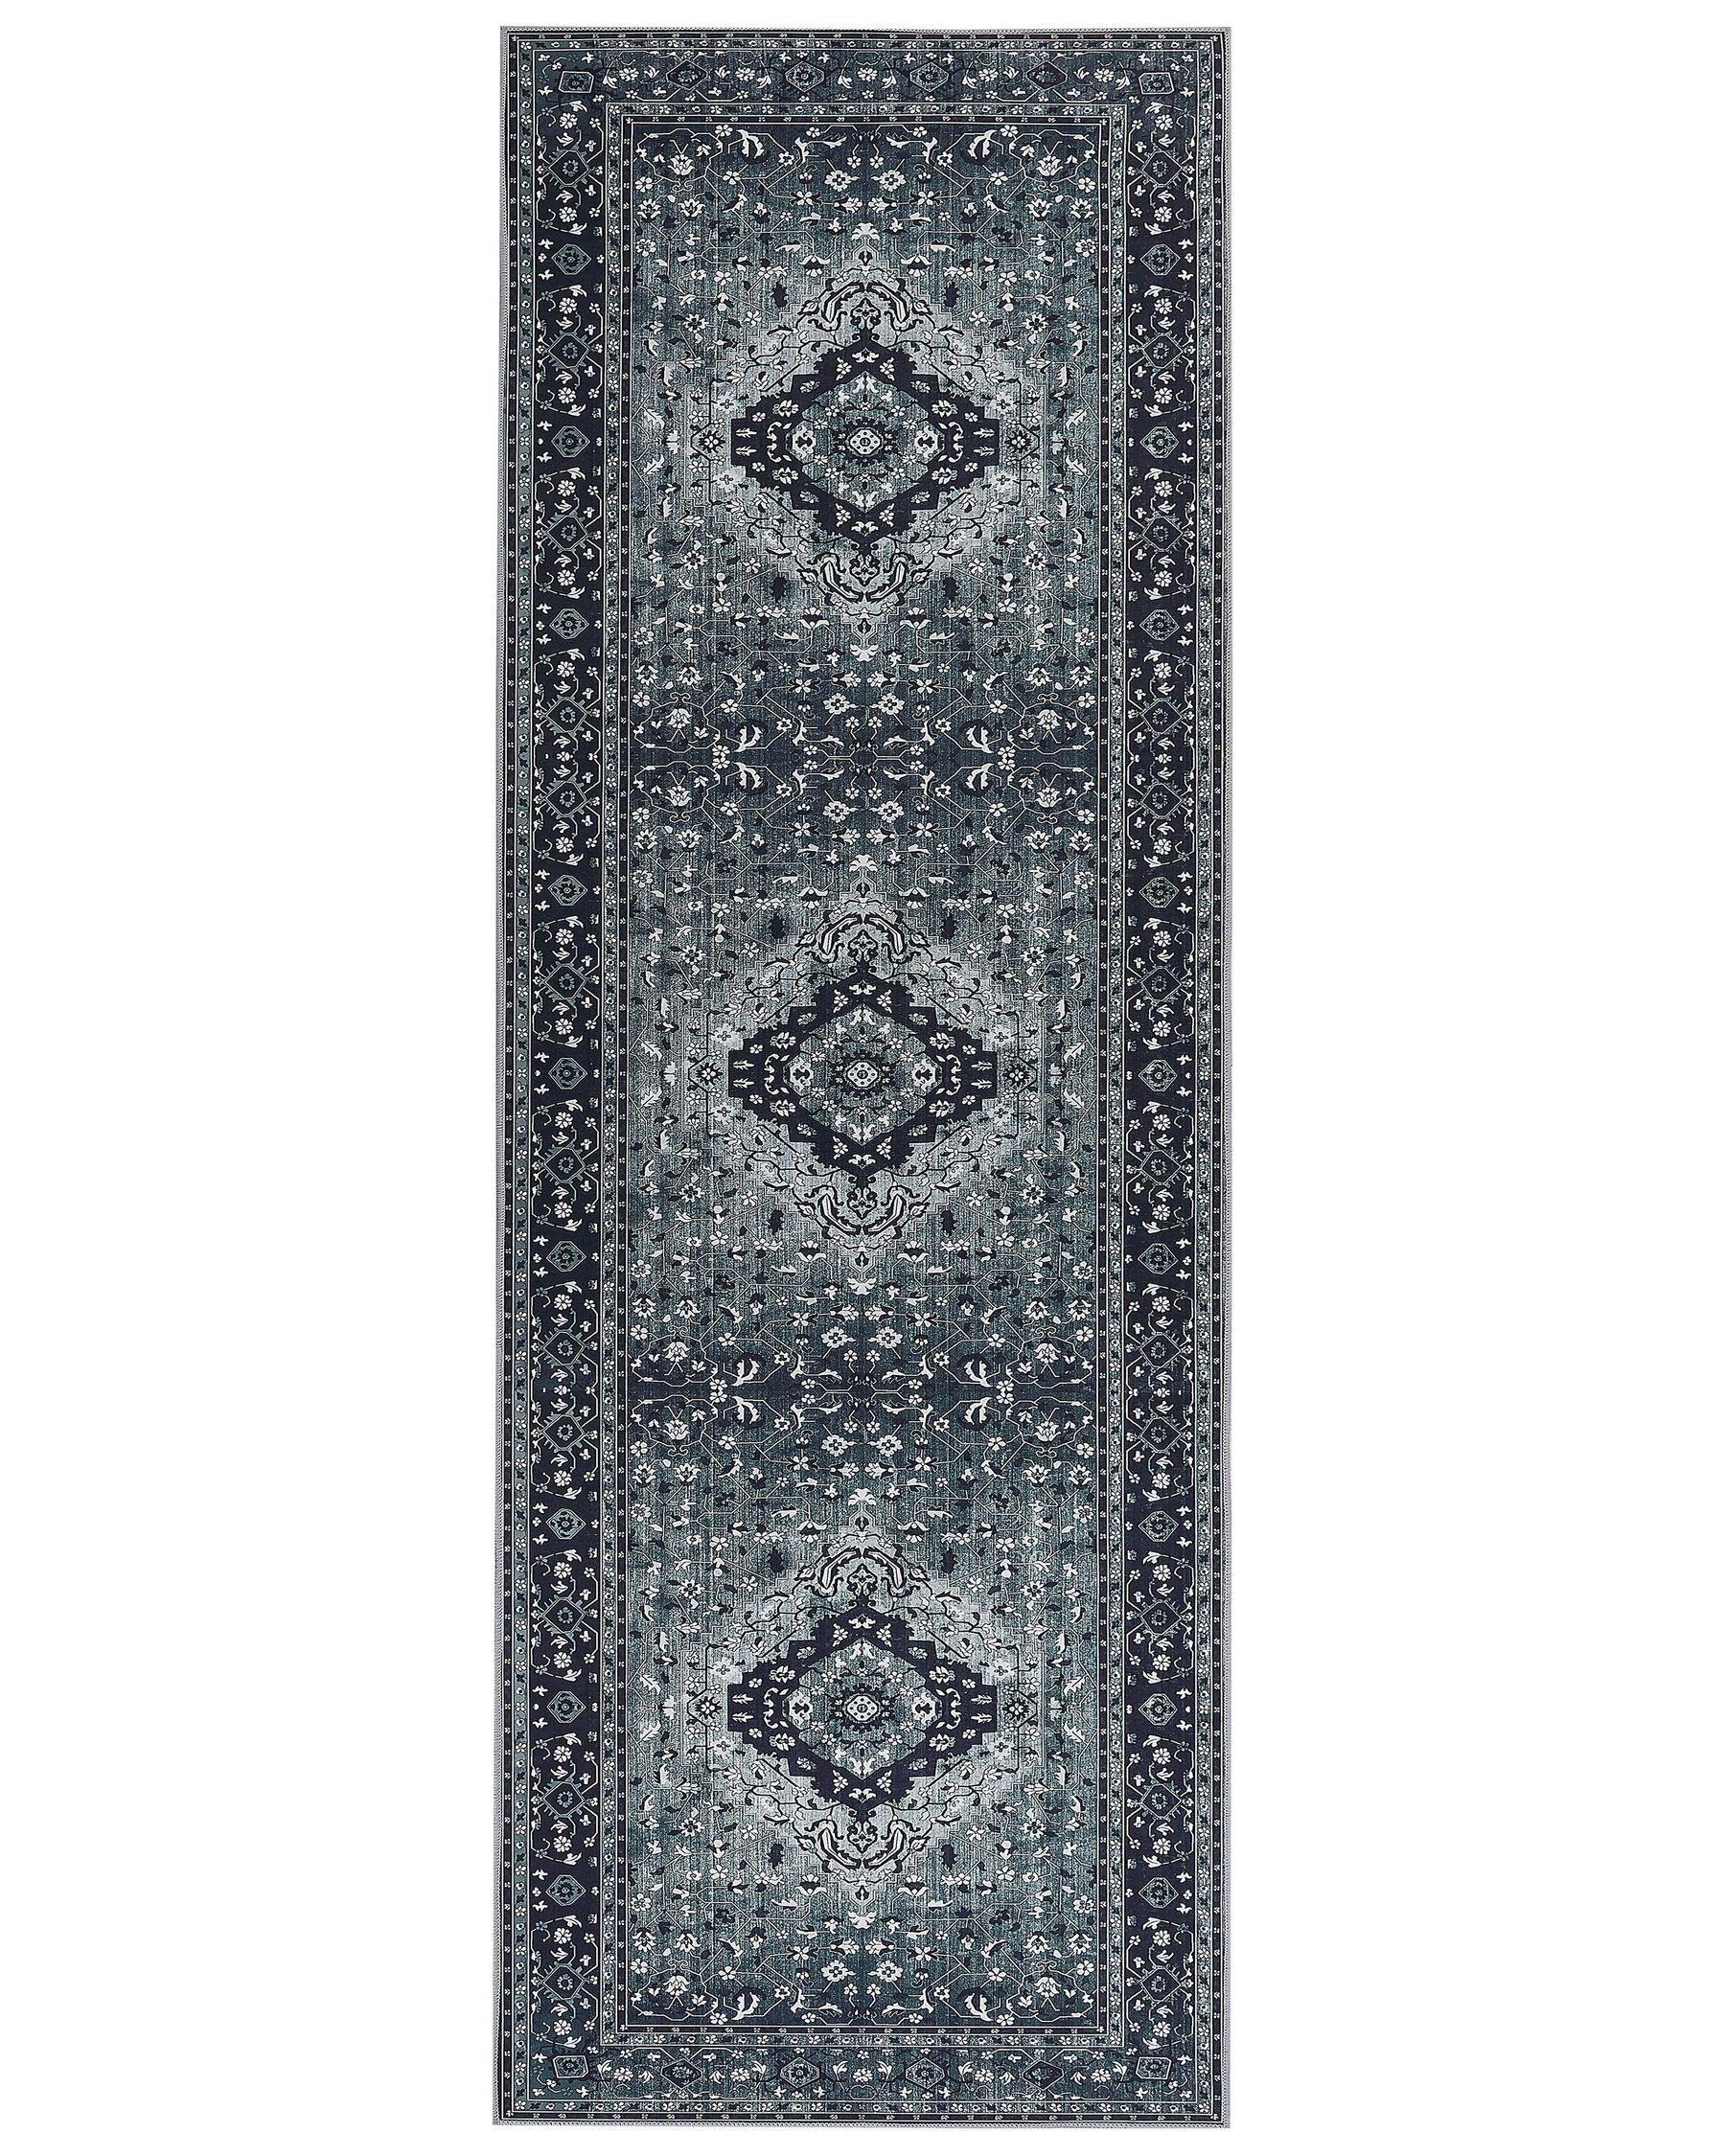 Teppich grau orientalisches Muster 70 x 200 cm Kurzflor VADKADAM_831370